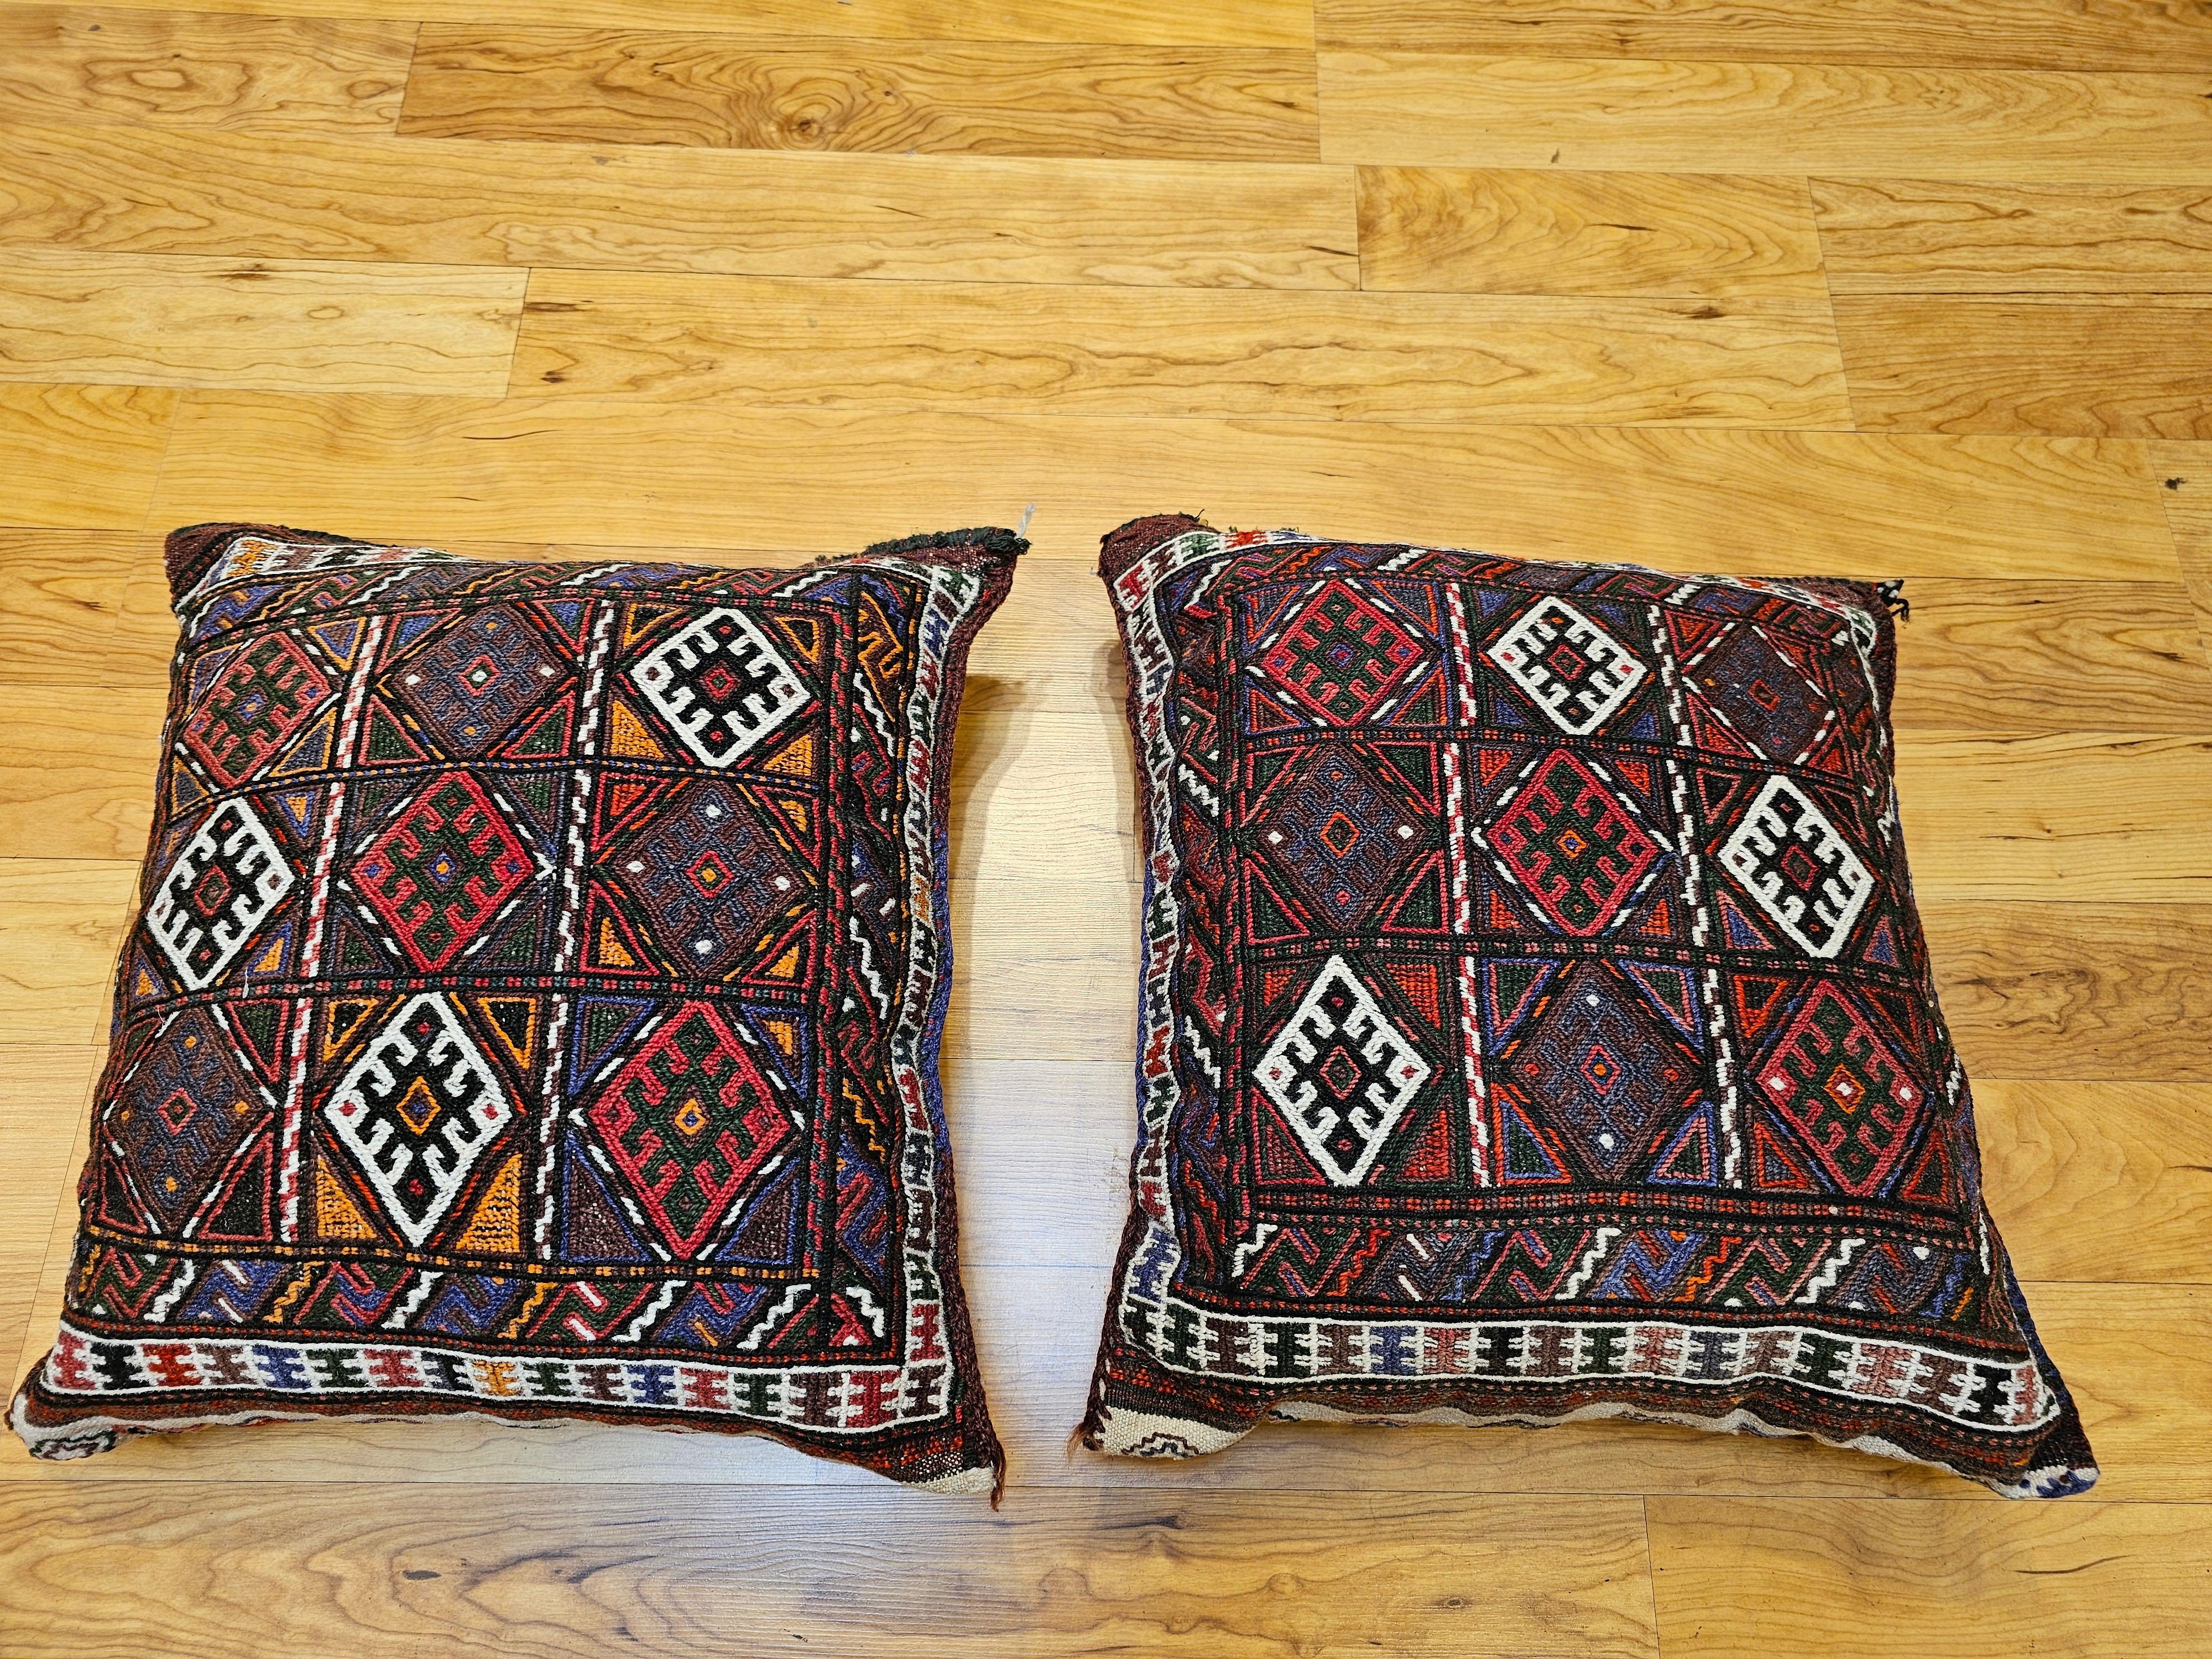 Ein Paar wunderschöner handgenähter Kissen aus antiken kurdischen Satteltaschen, die in den frühen 1900er Jahren hergestellt wurden. Jedes Kissen hat einen handgeknüpften Teppich mit einem geometrischen 3 x 3-Sterne-Muster für die Vorderseite des